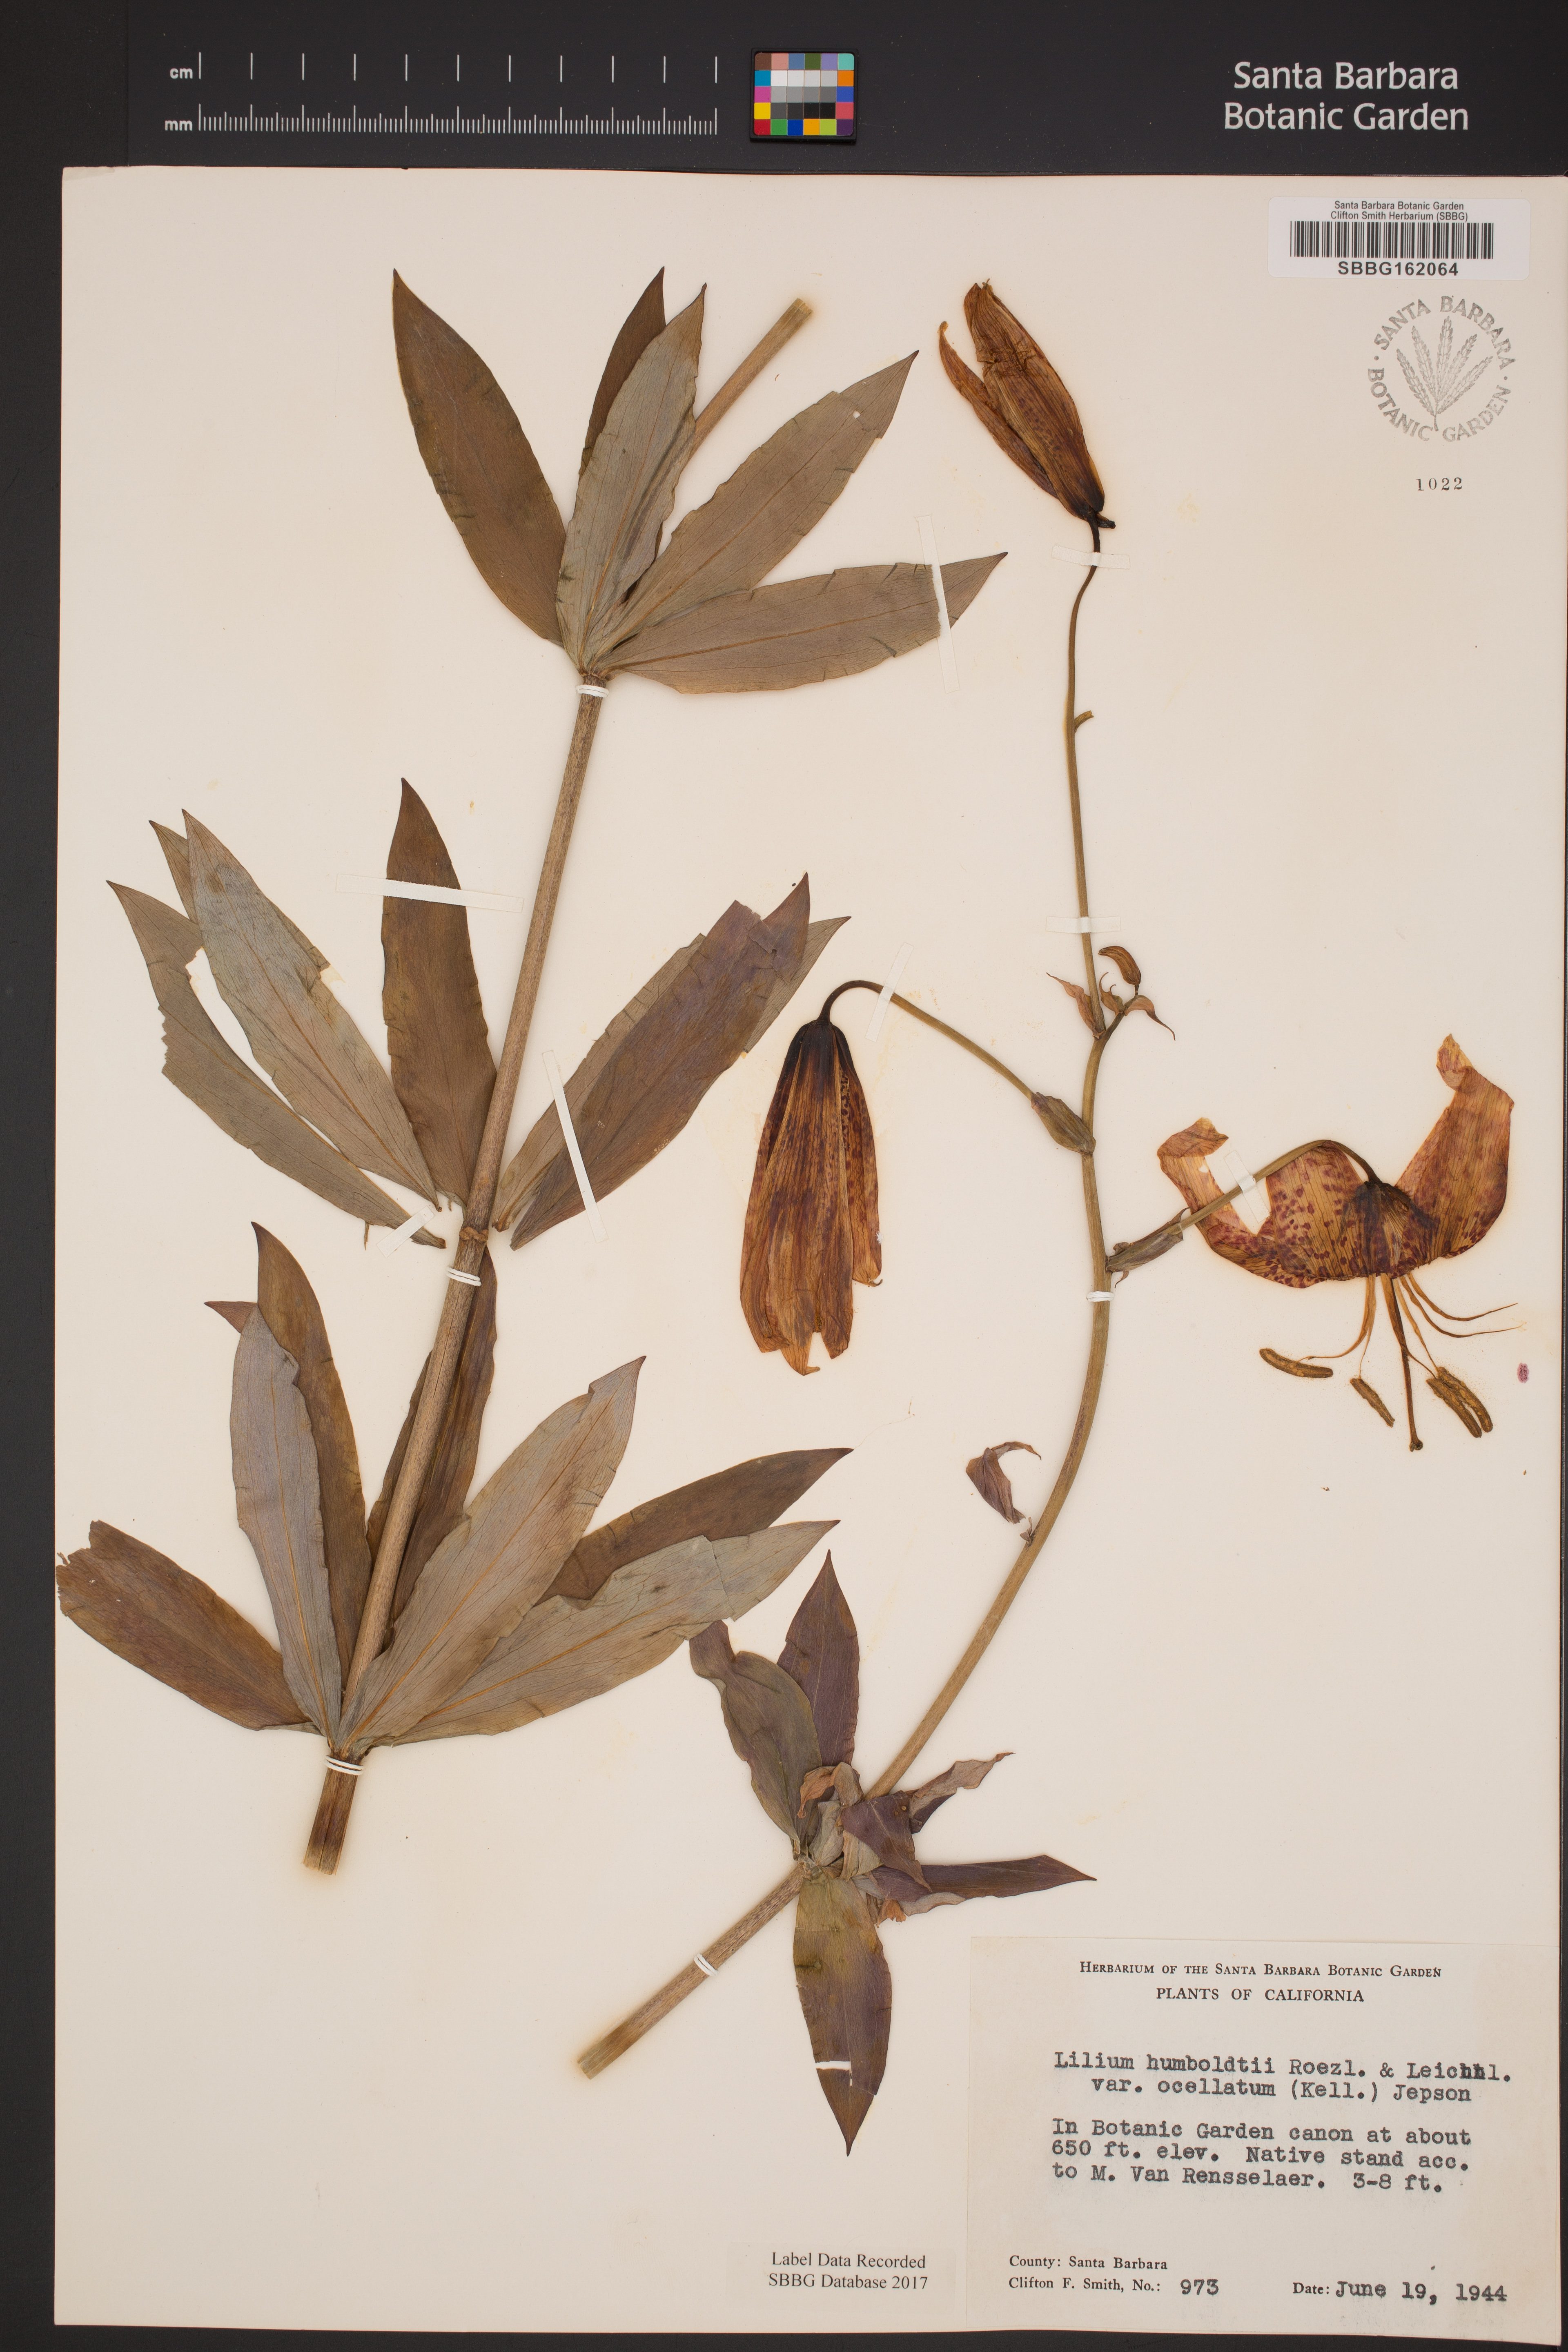 Lilium humboldtii subsp. ocellatum image